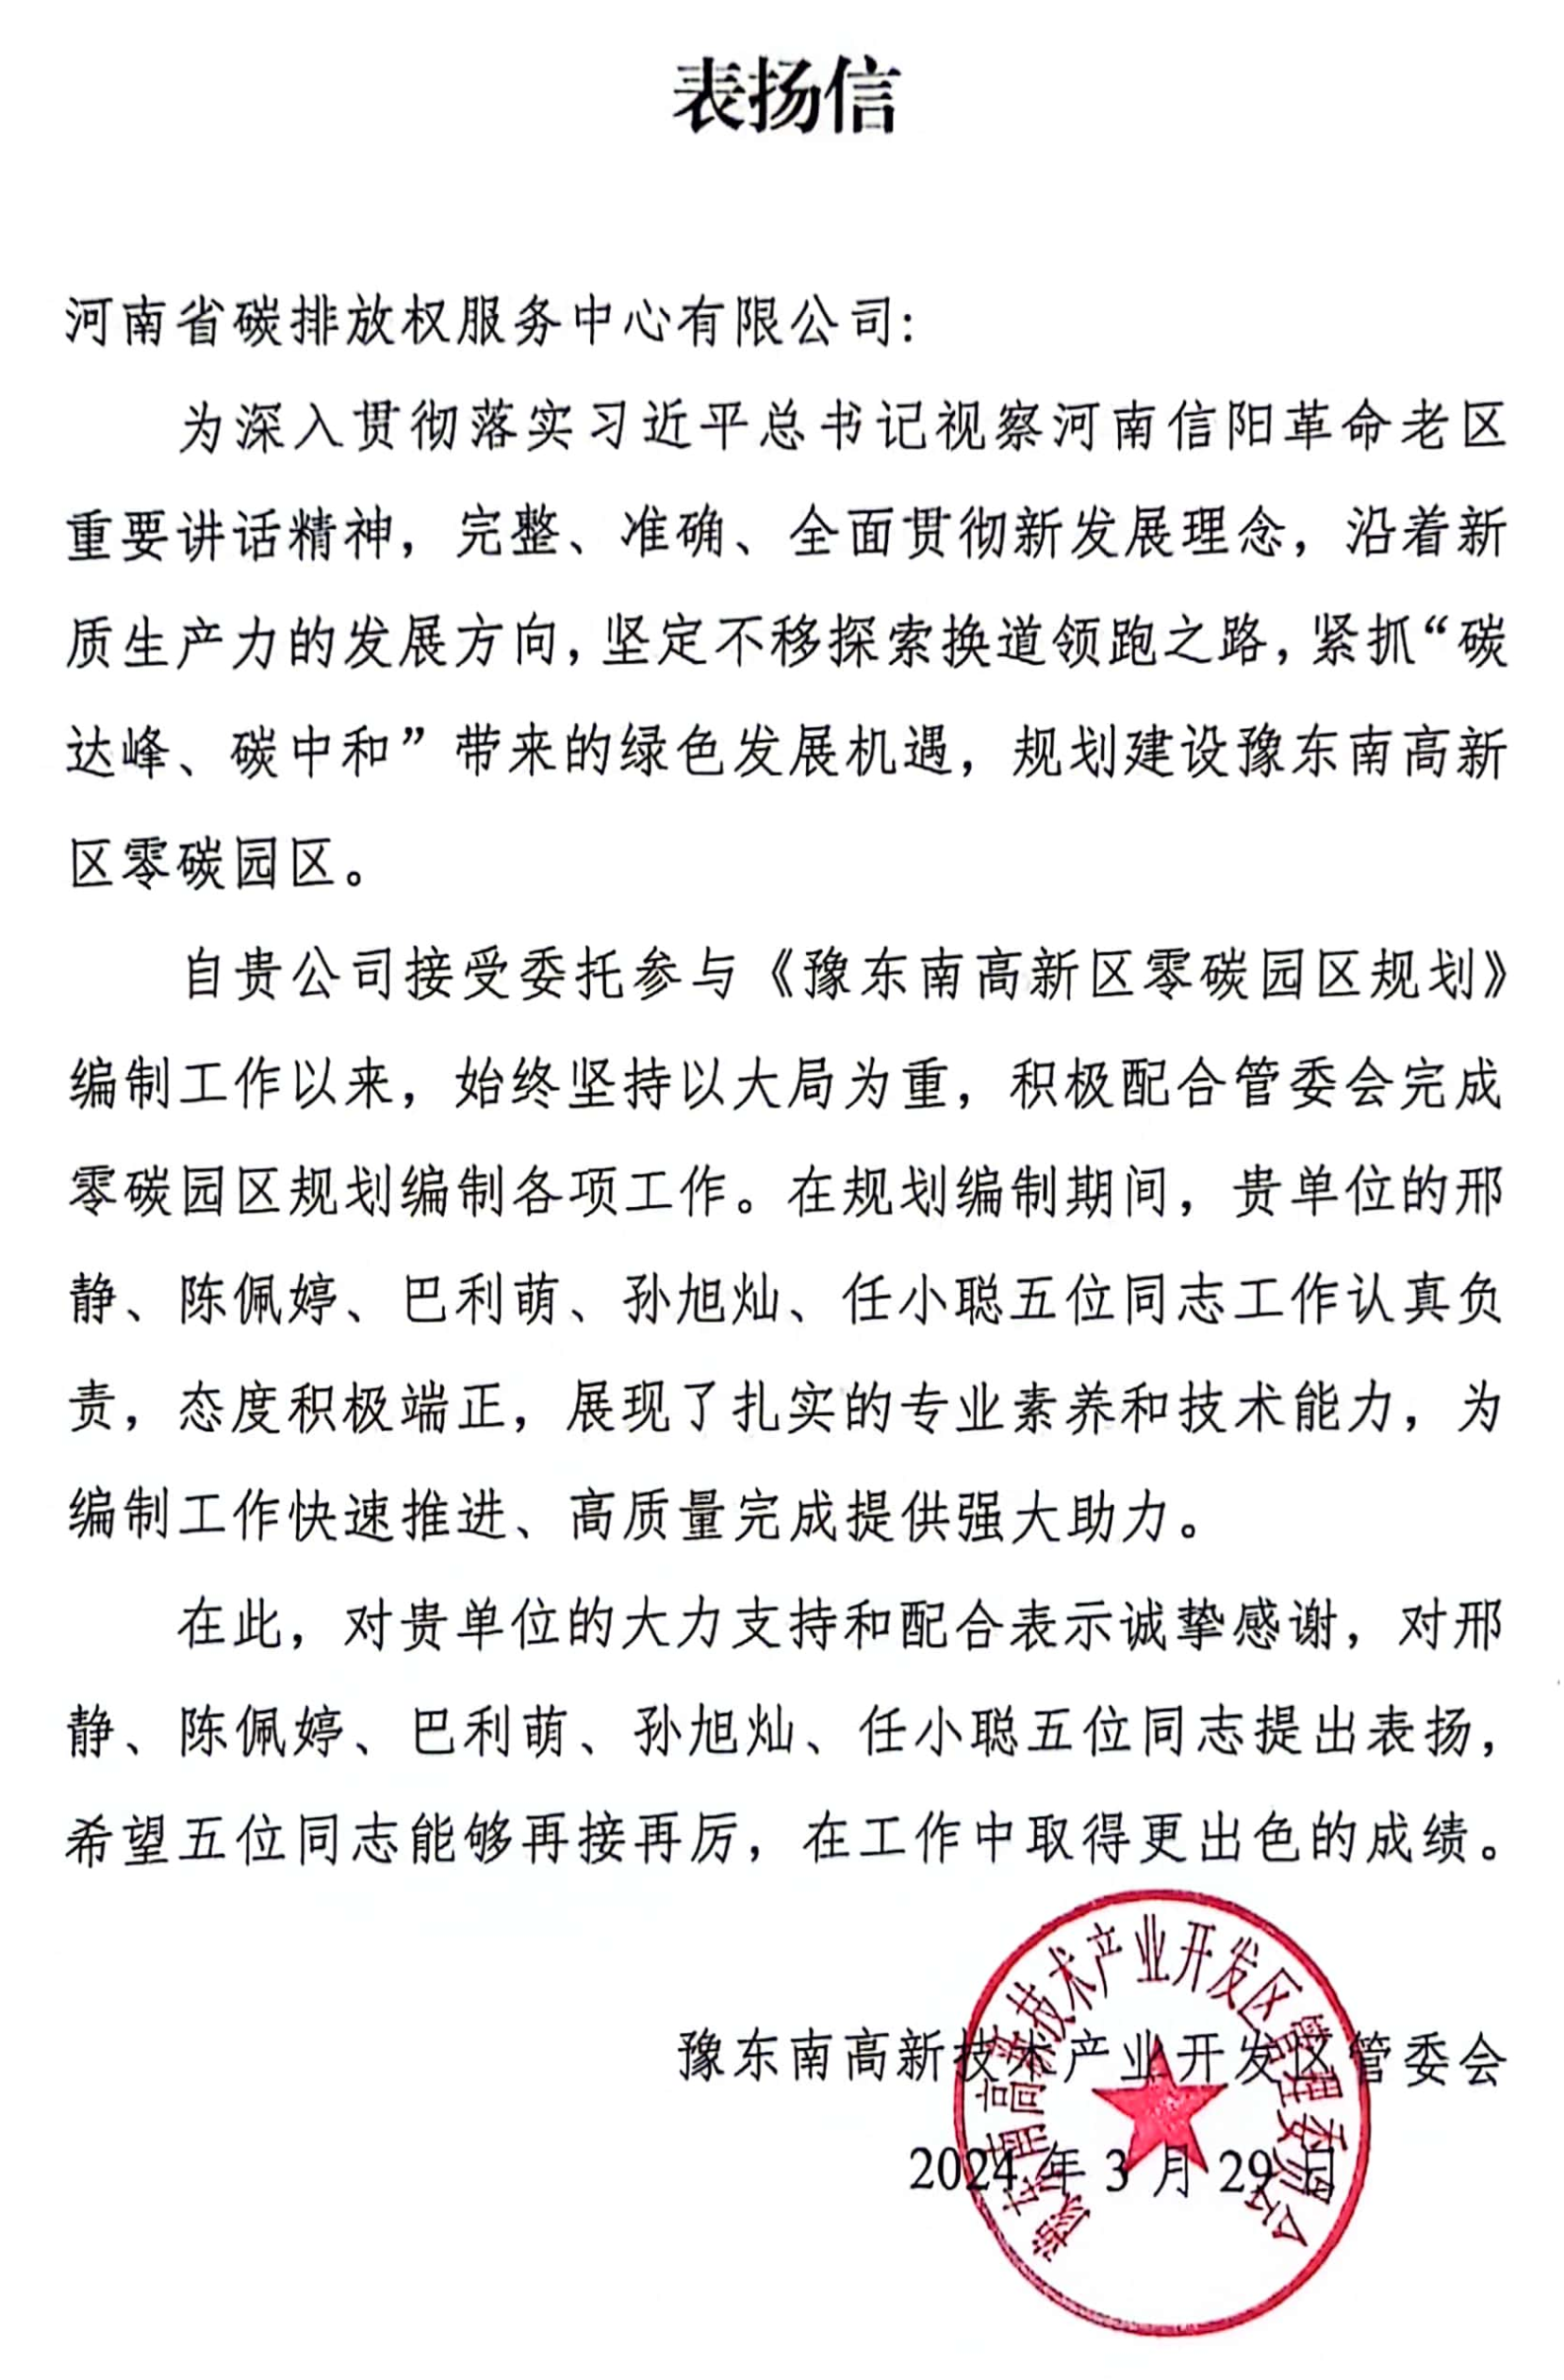 河南省碳排放權服務中心收到豫東南高新技術產業開發區管委會發來的表揚信